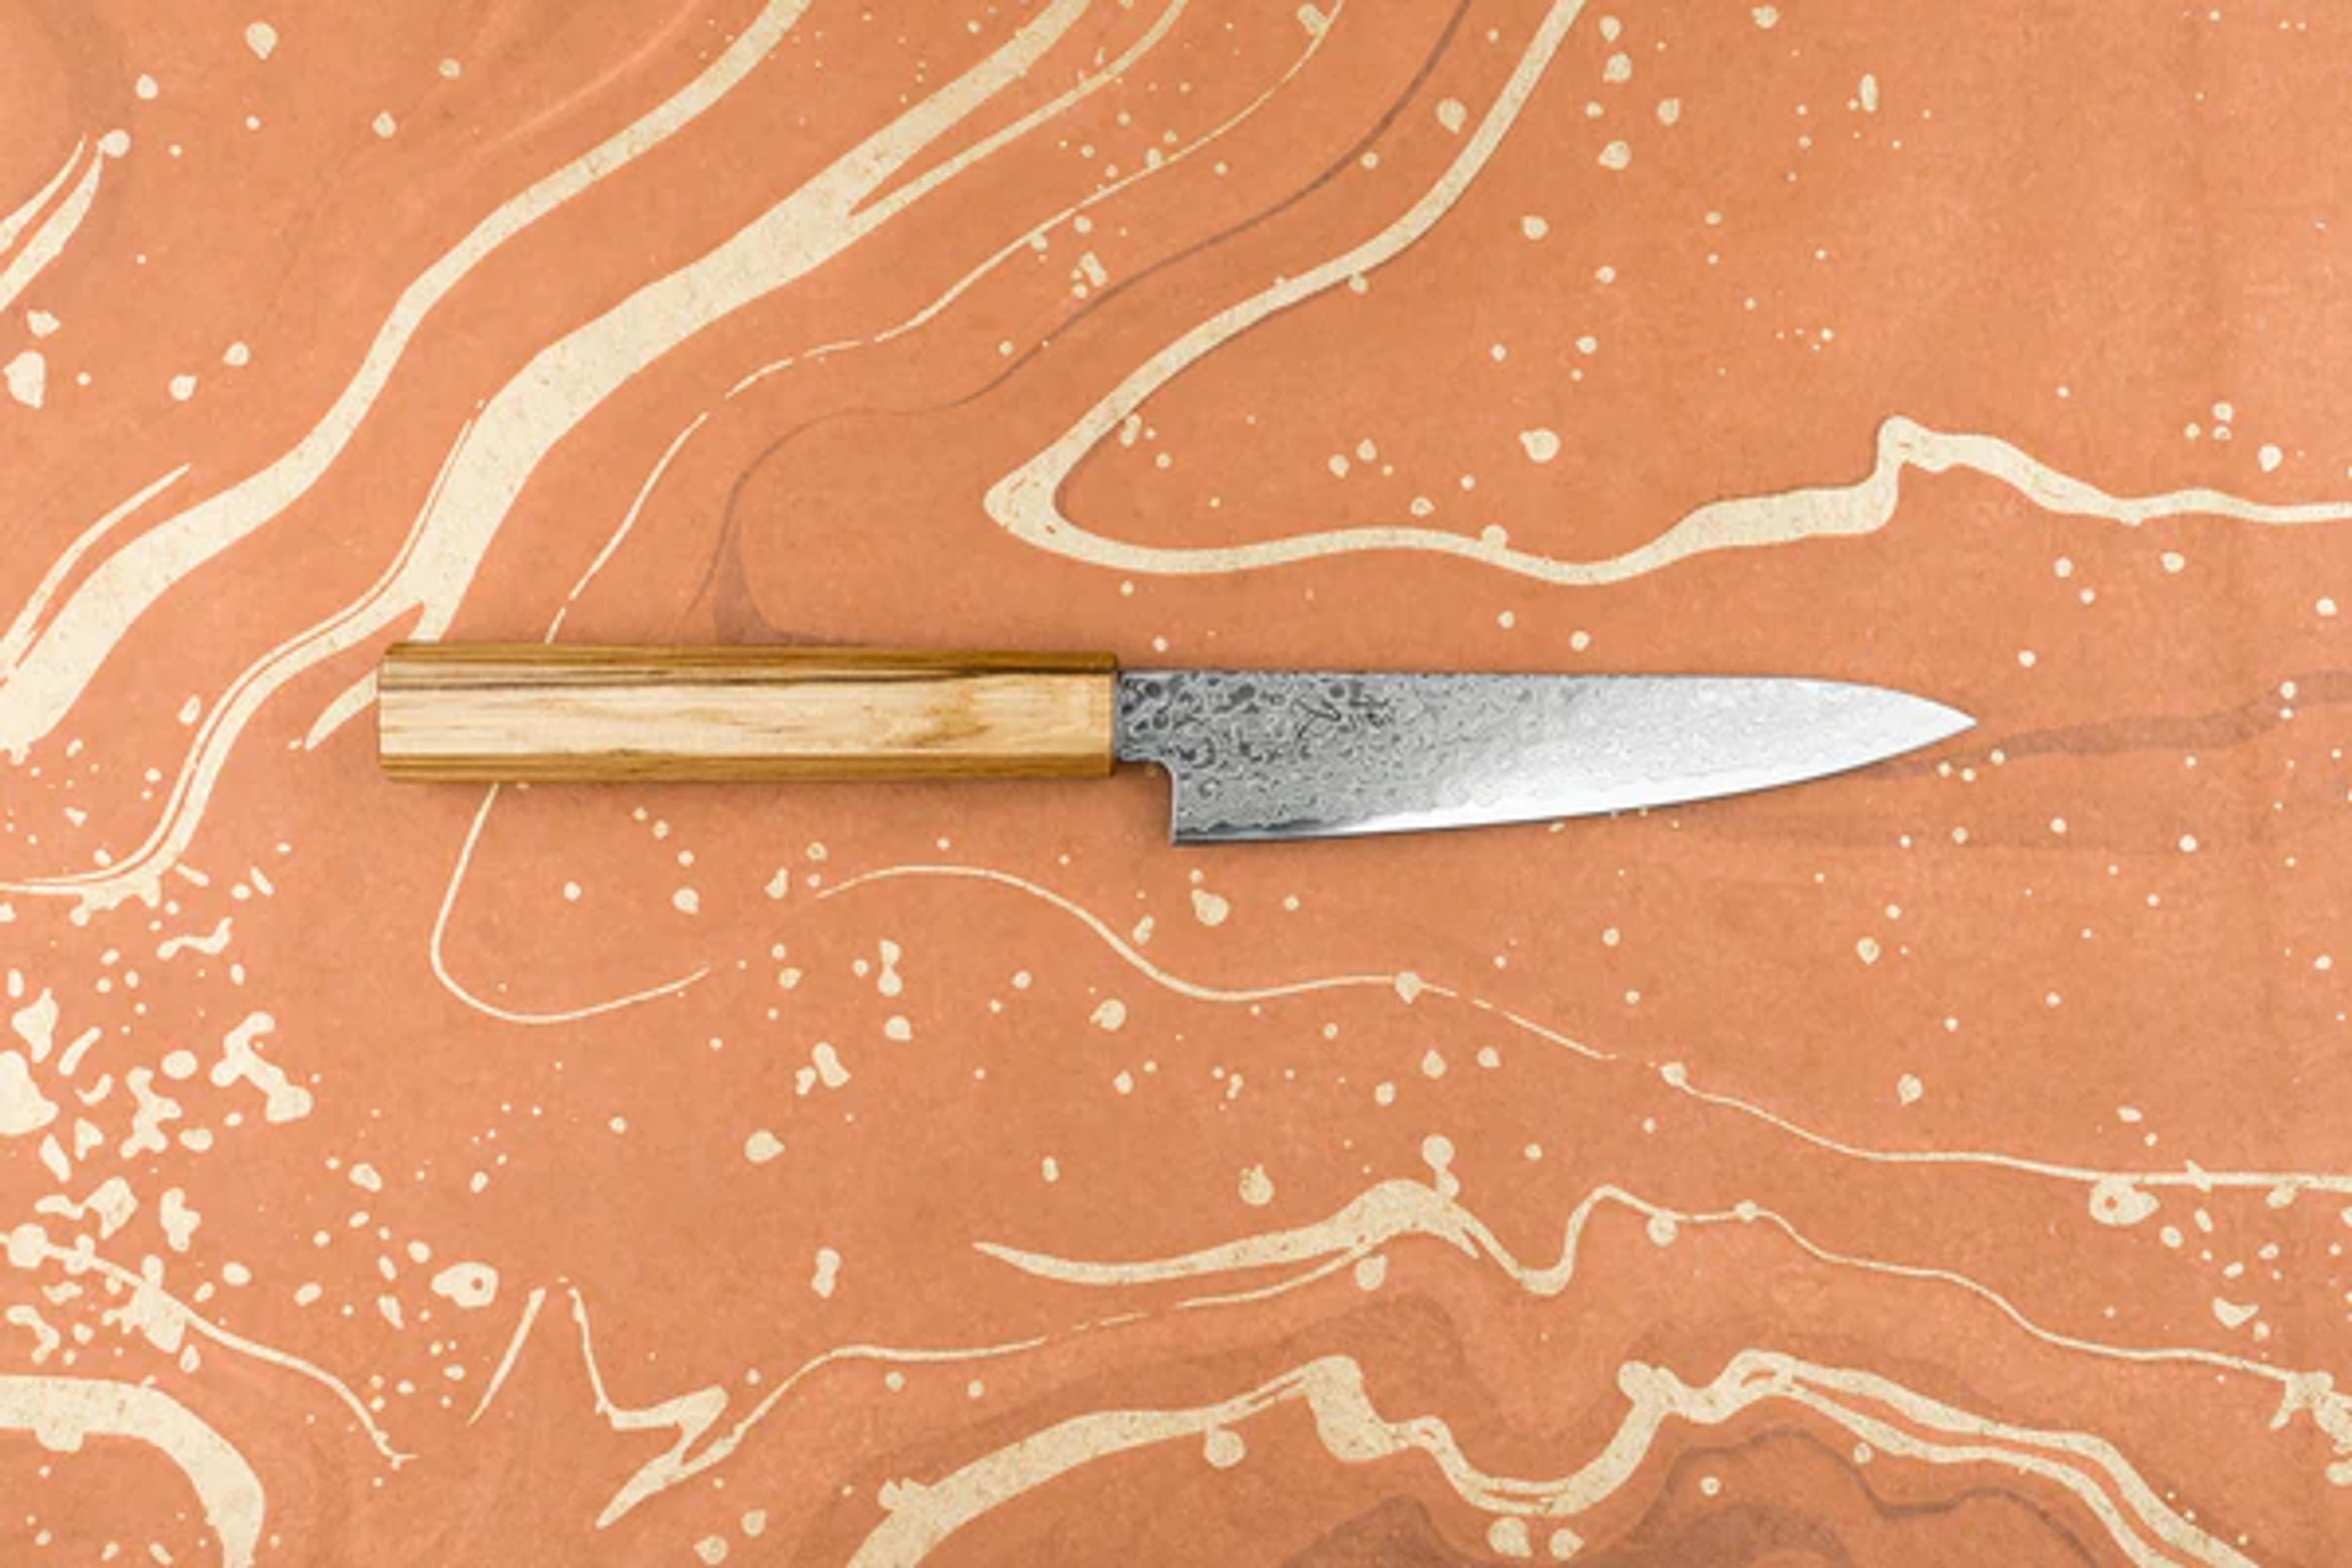 Tsunehisa ZA18 Damascus Petty 135mm | Knifewear - Handcrafted Japanese Kitchen Knives